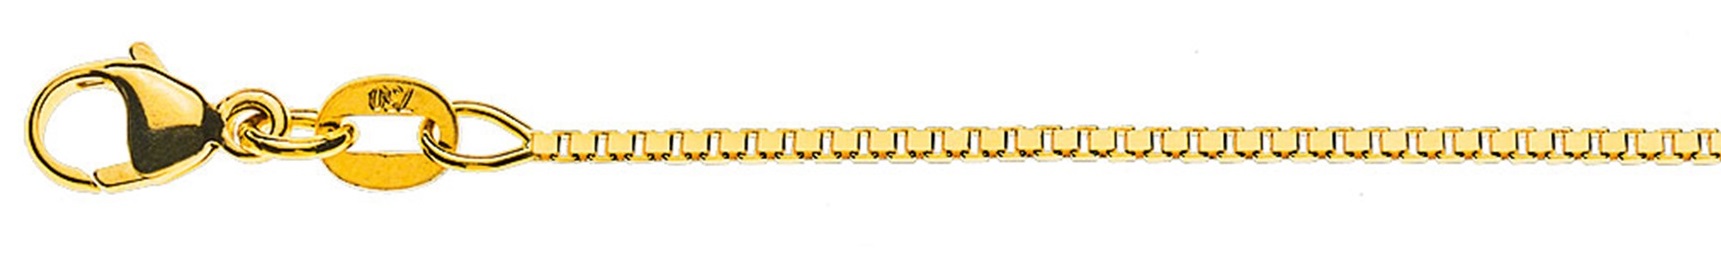 AURONOS Prestige Halskette Gelbgold 18K Venezianerkette diamantiert 50cm 1.1mm